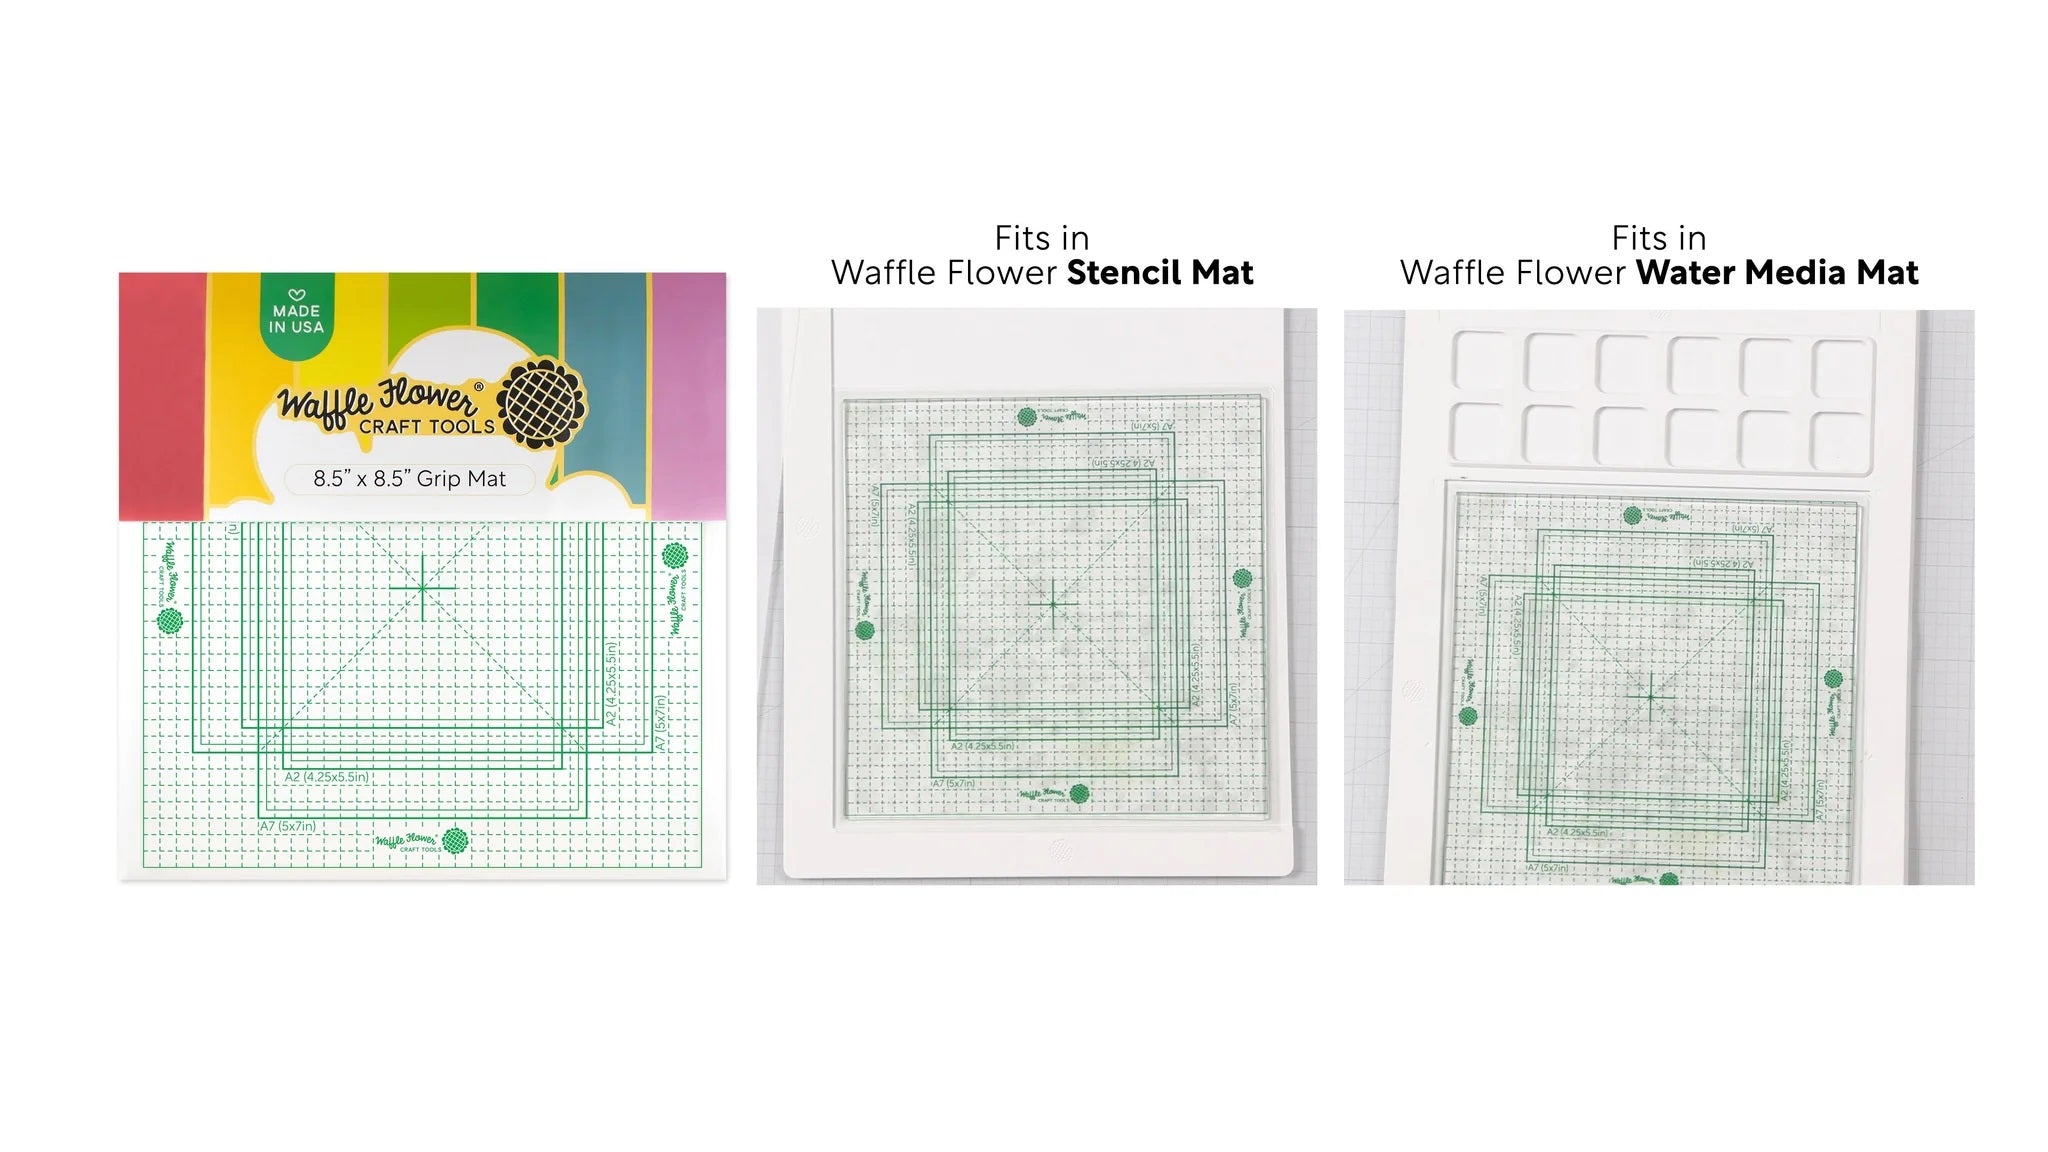 Waffle Flower - 8.5" x 8.5" Grip Mat